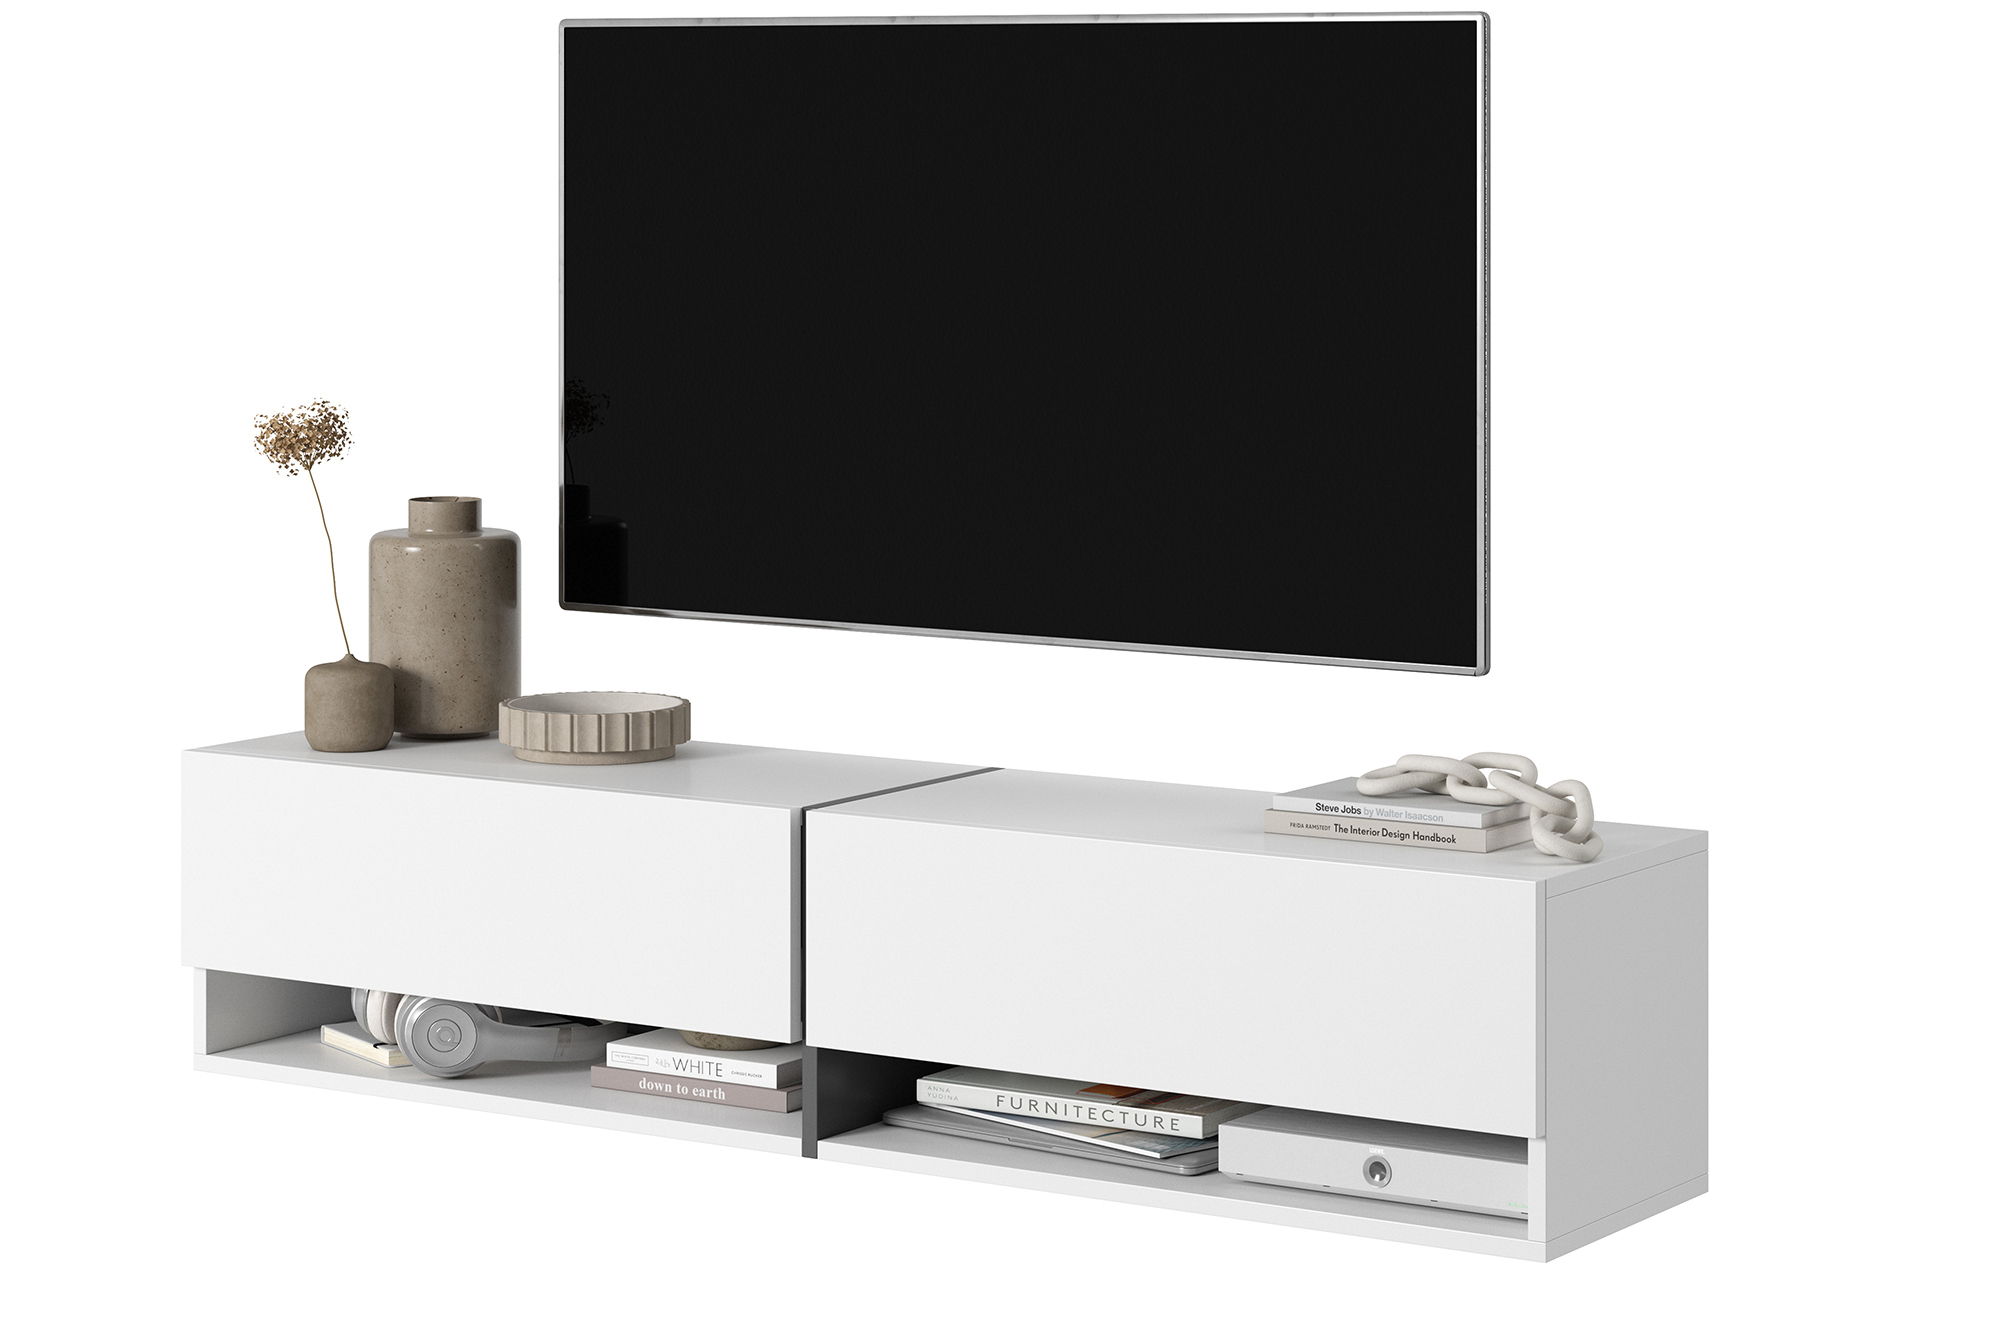 MIRRGO Meuble TV 140 cm blanc avec insert bleu marine